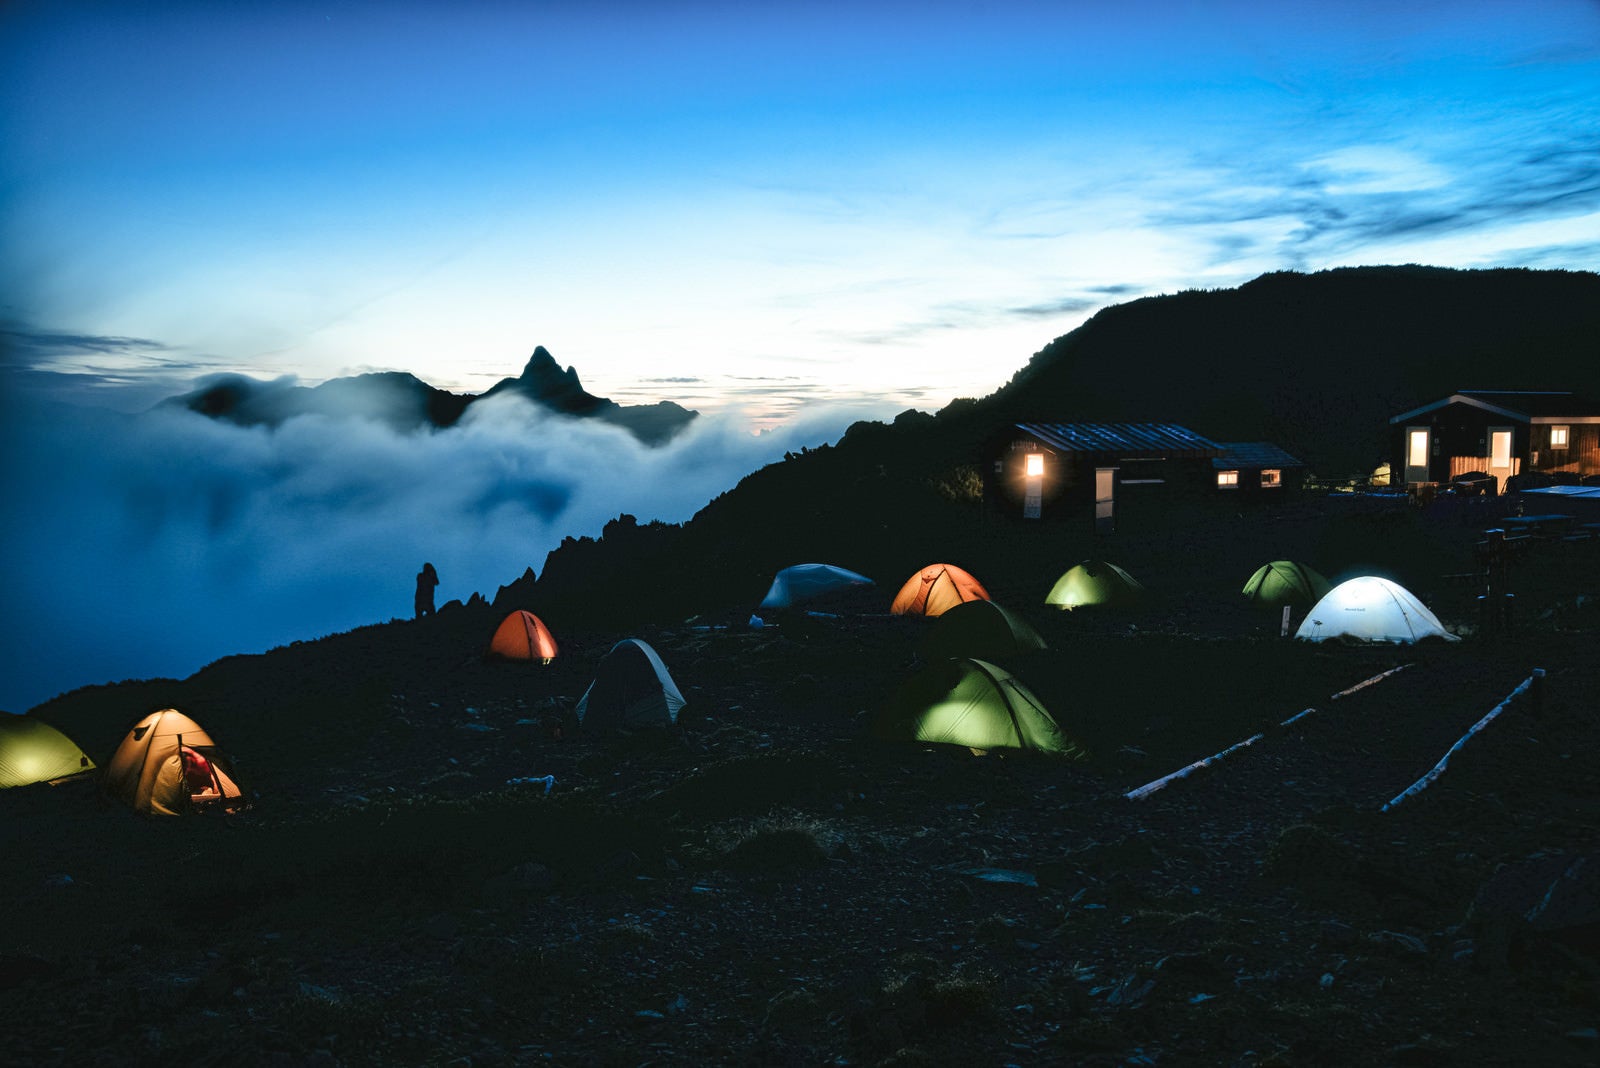 「大天井岳の朝焼けとテントの灯り」の写真